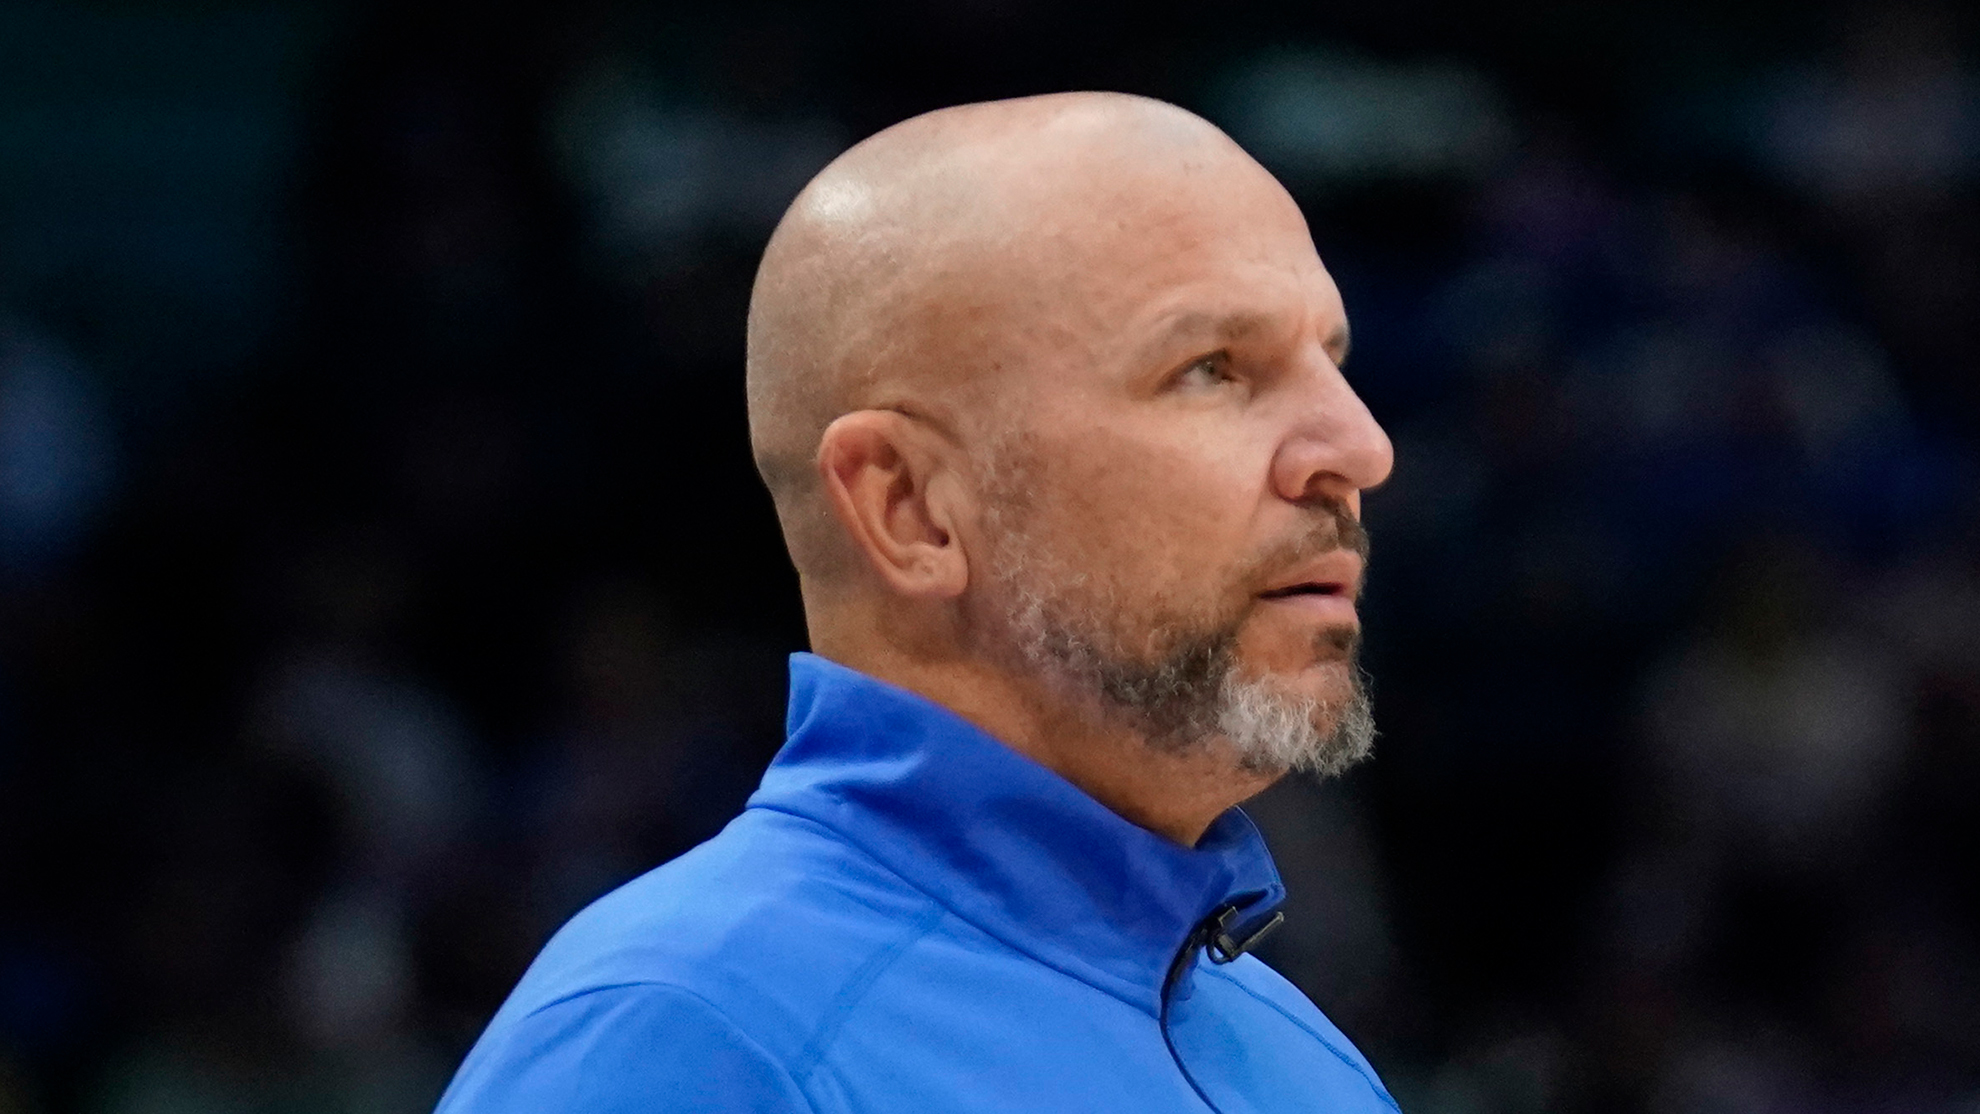 Jason Kidd, Dallas Mavericks head coach